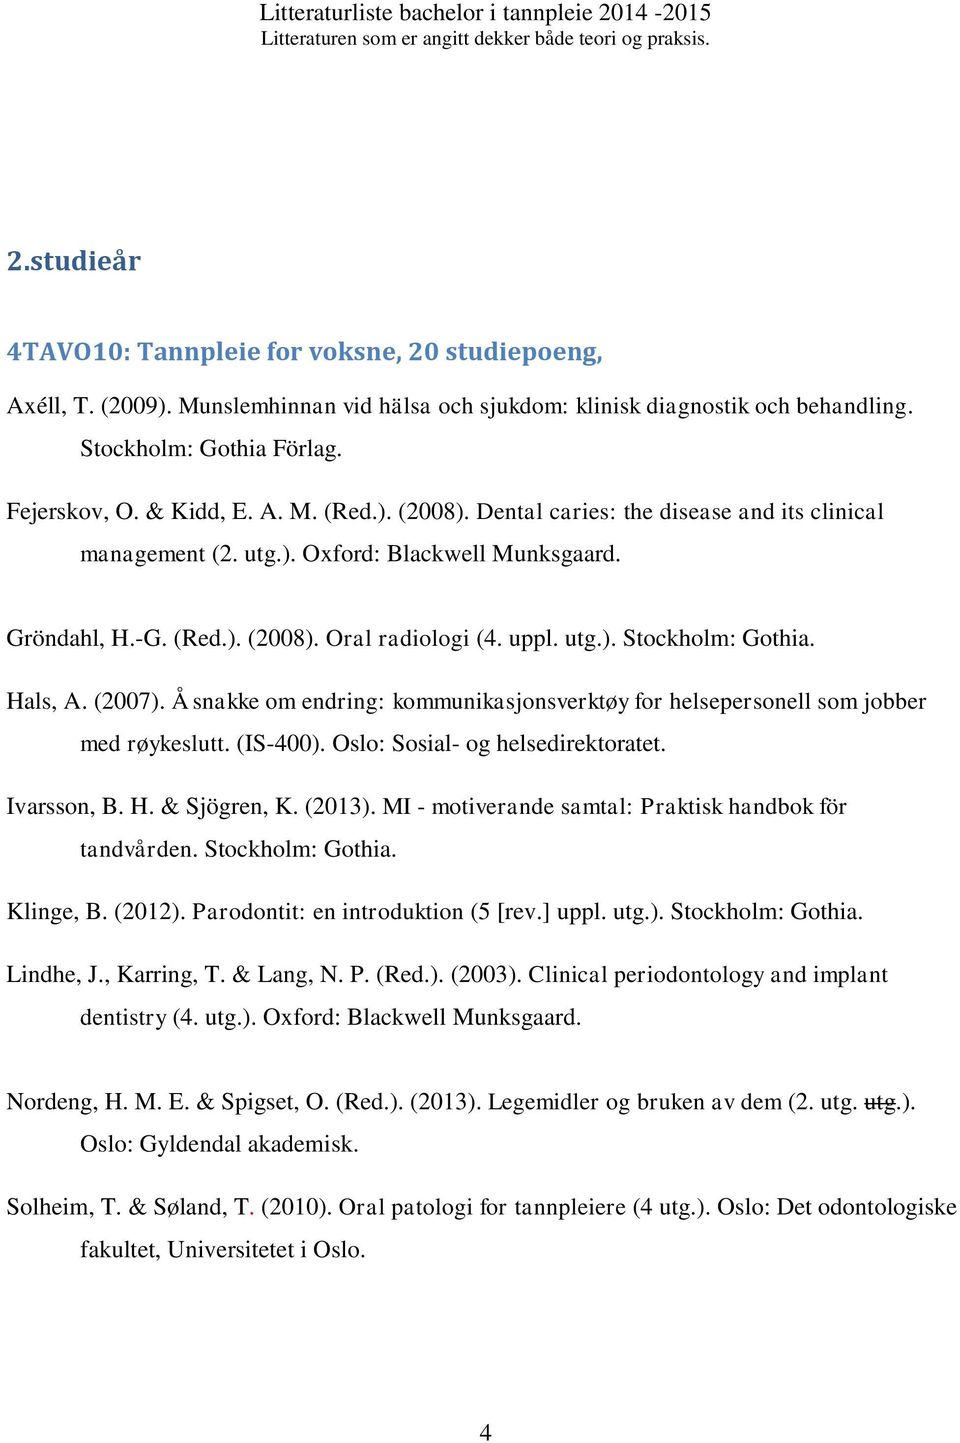 Hals, A. (2007). Å snakke om endring: kommunikasjonsverktøy for helsepersonell som jobber med røykeslutt. (IS-400). Oslo: Sosial- og helsedirektoratet. Ivarsson, B. H. & Sjögren, K. (2013).